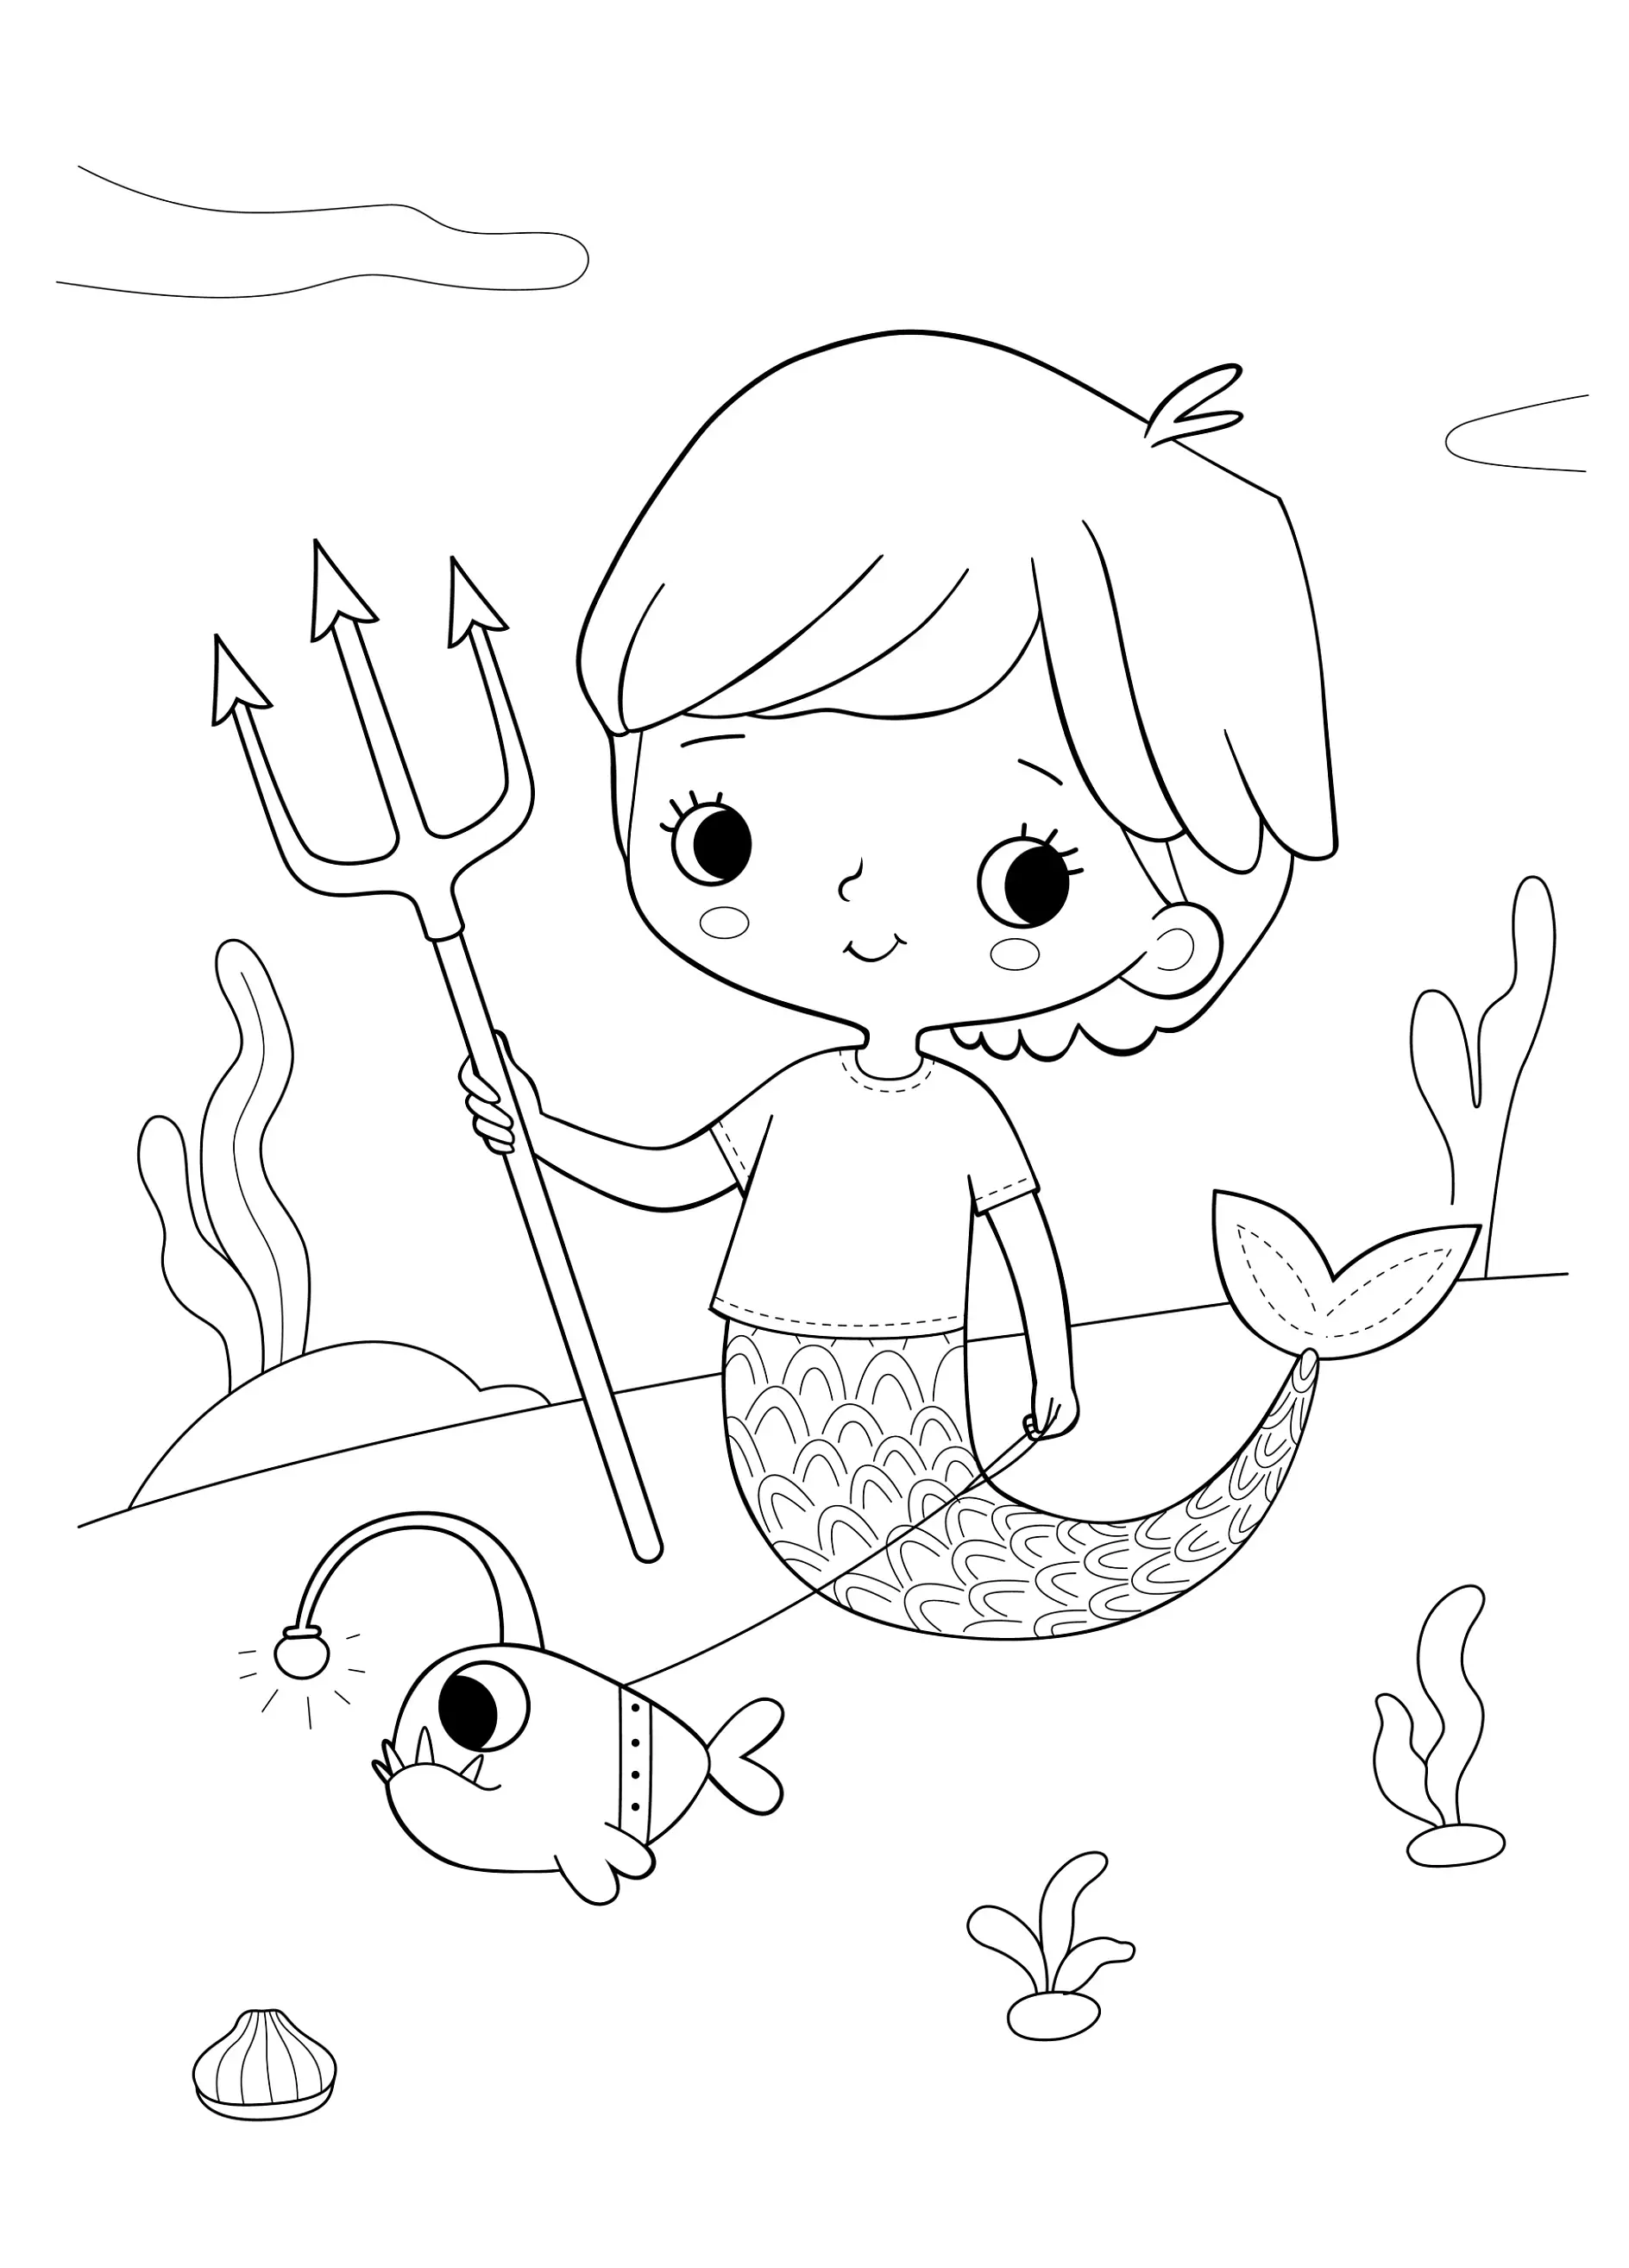 Ausmalbild Meerjungfrau mit Dreizack und einem Anglerfisch in einer Unterwasserlandschaft